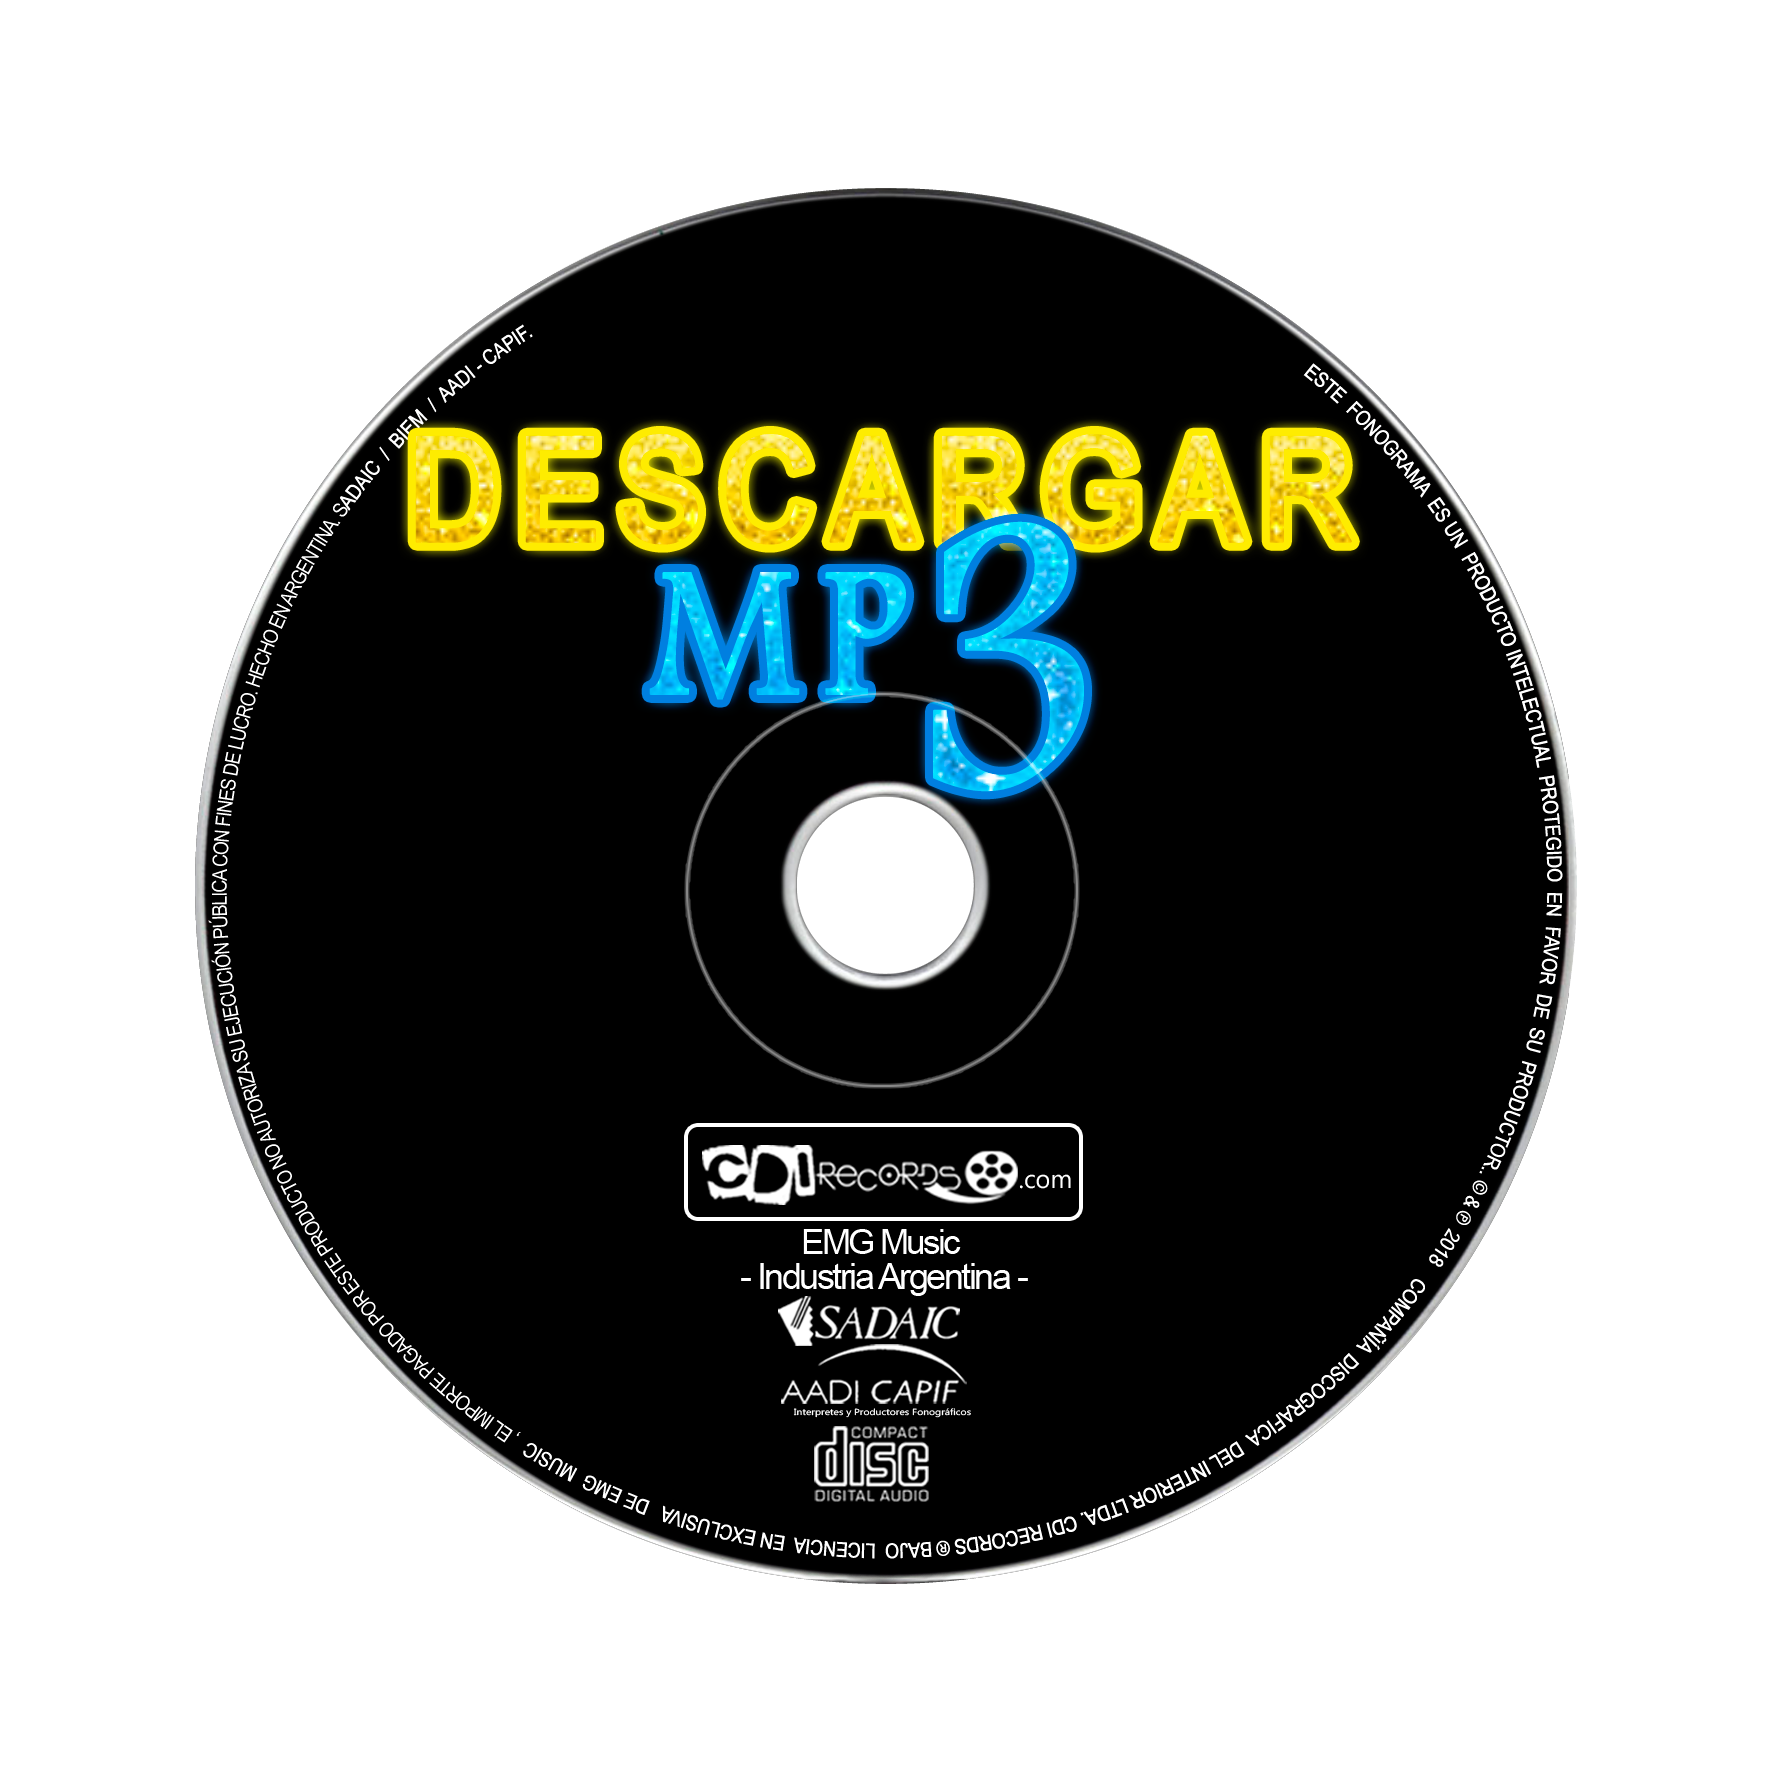 Acumulativo cerebro querido DESCARGAR CD COMPLETOS - Disponible para descarga en mp3 | Available for  download in mp3